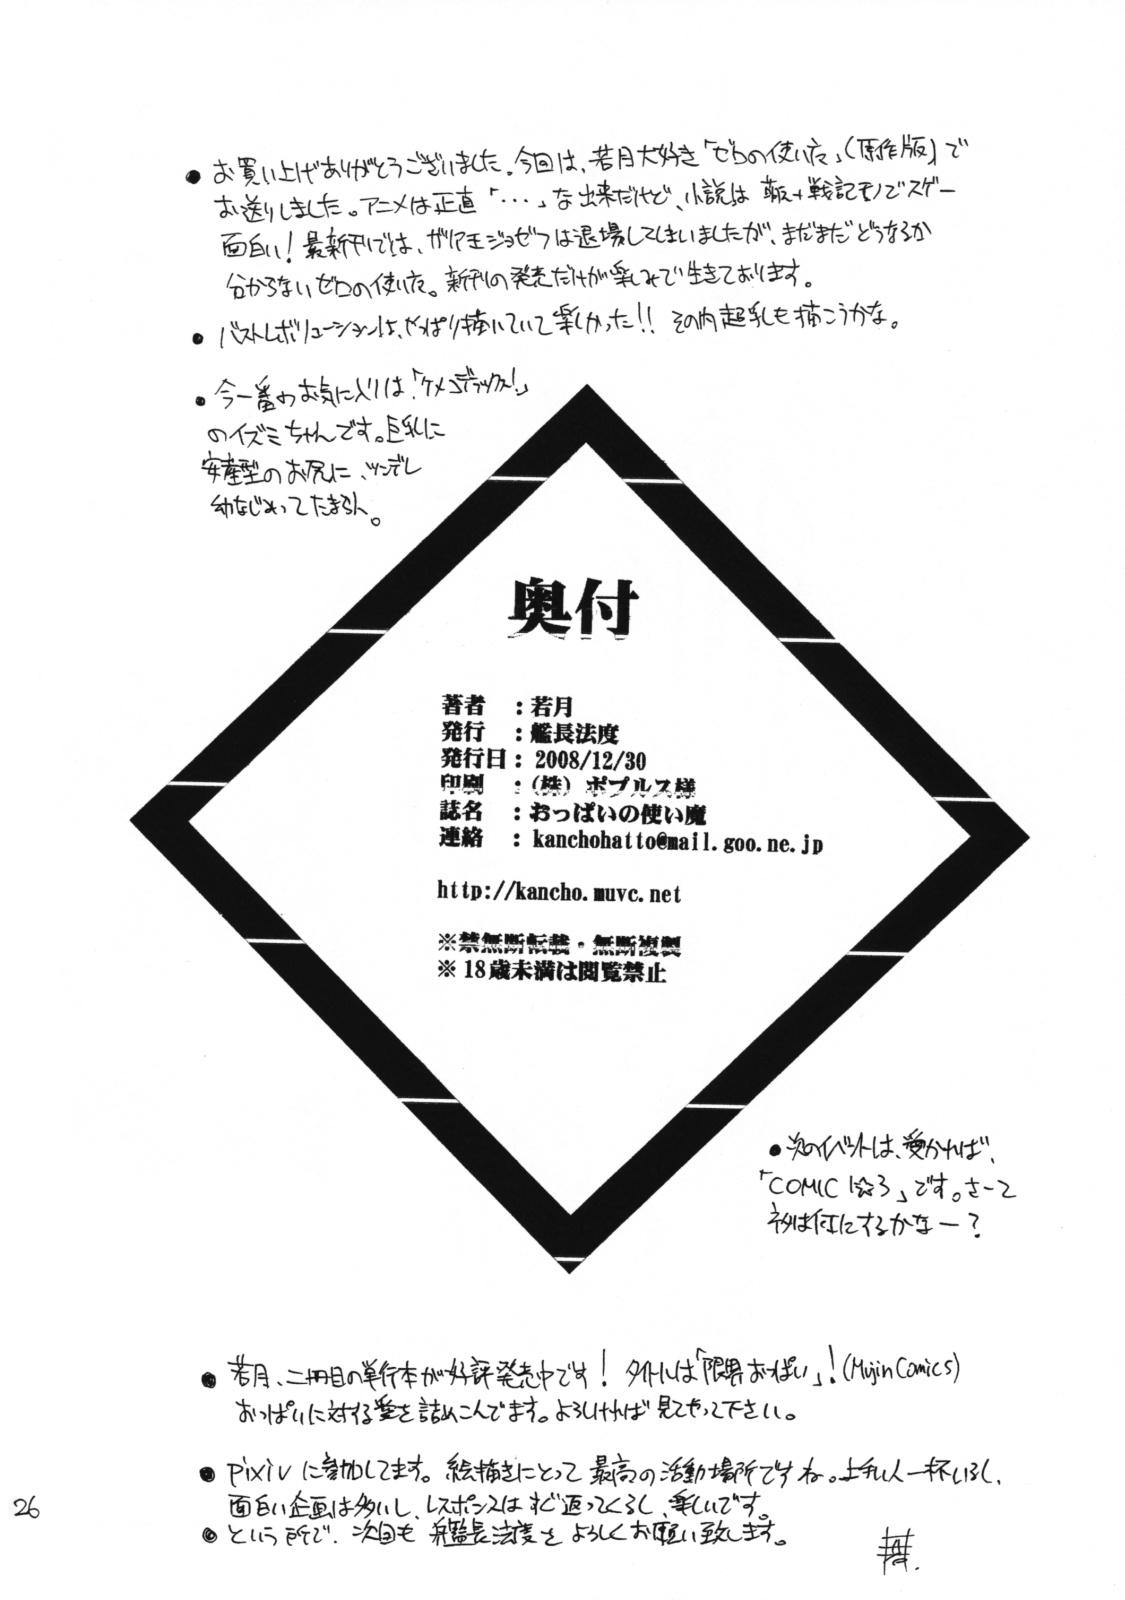 Exhibitionist Oppai no Tsukaima - Zero no tsukaima Gaypawn - Page 25